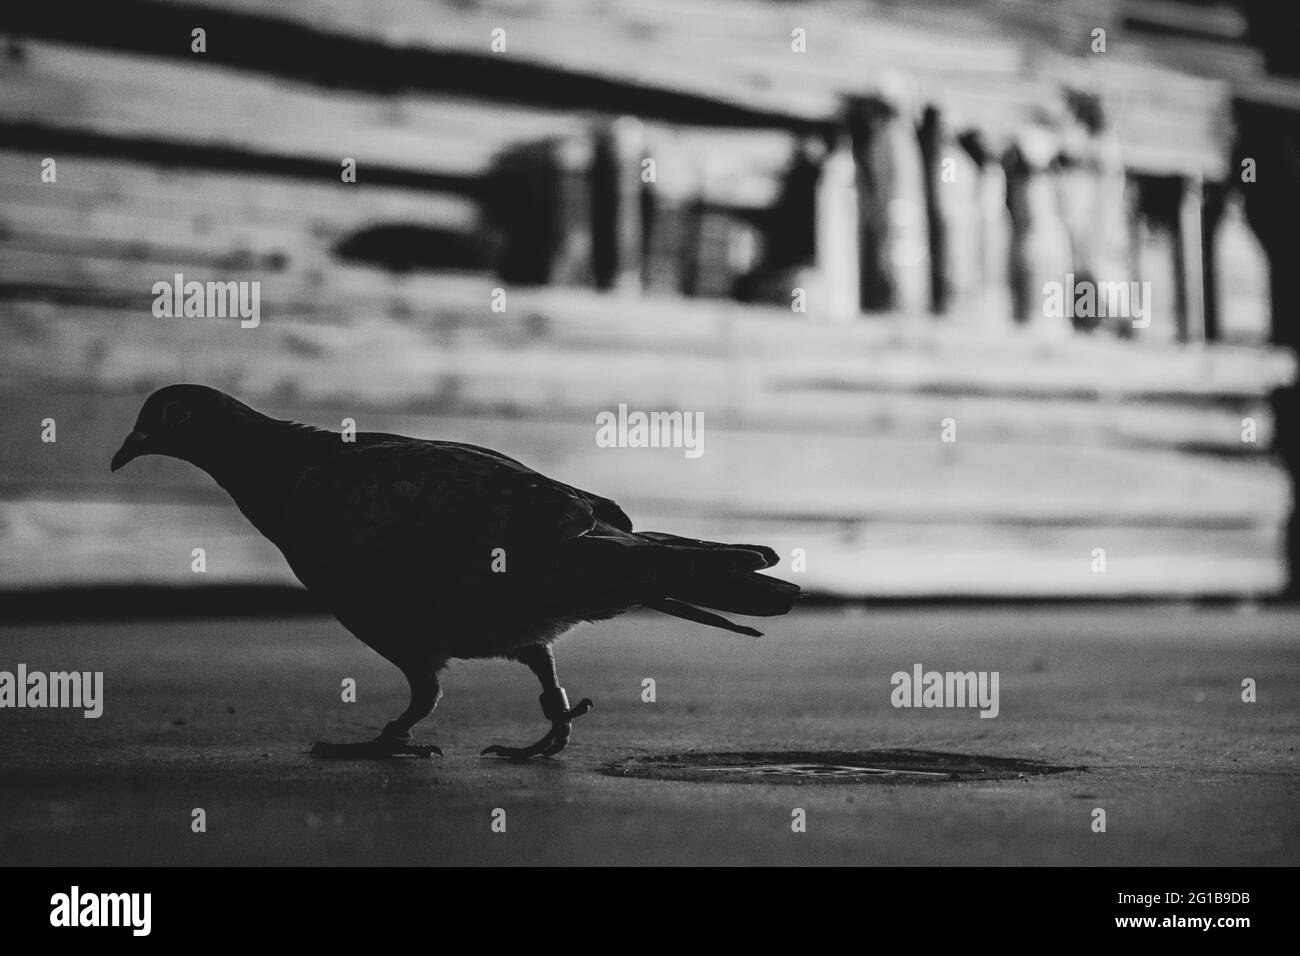 Silhouette einer einsamen Taube in starkem, düsterem Kontras als eine surreale, schwarzweiss Momentaufnahme. Melancholie Monochrom eines Vogels. Stock Photo